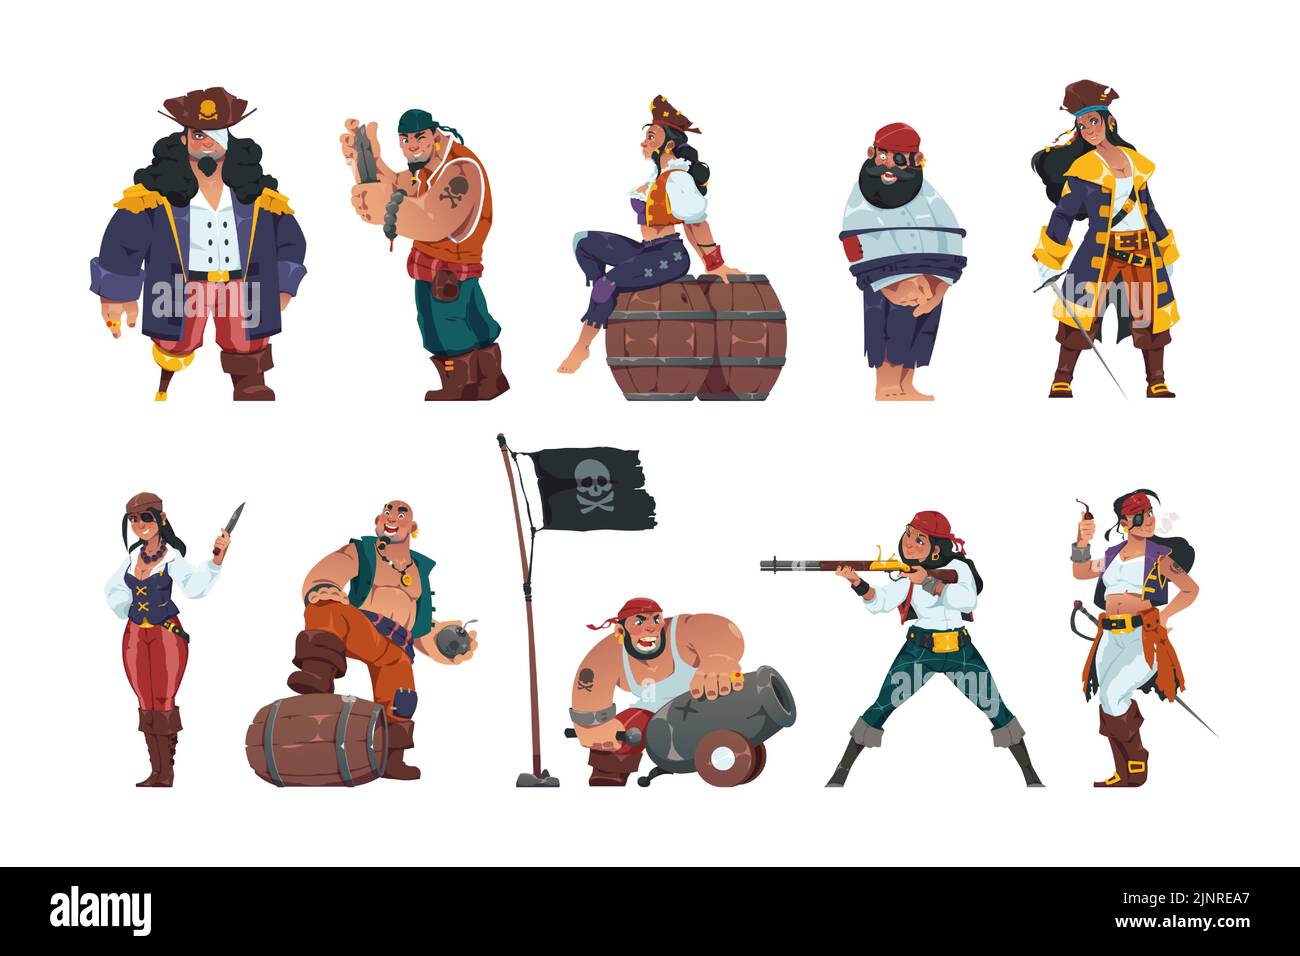 Les hommes et les femmes pirates. Caricaturer fantasy marins et guerriers de mer avec des épées Trésor coffre spyglass portant des chapeaux et des costumes de pirate. Vecteur marin Illustration de Vecteur